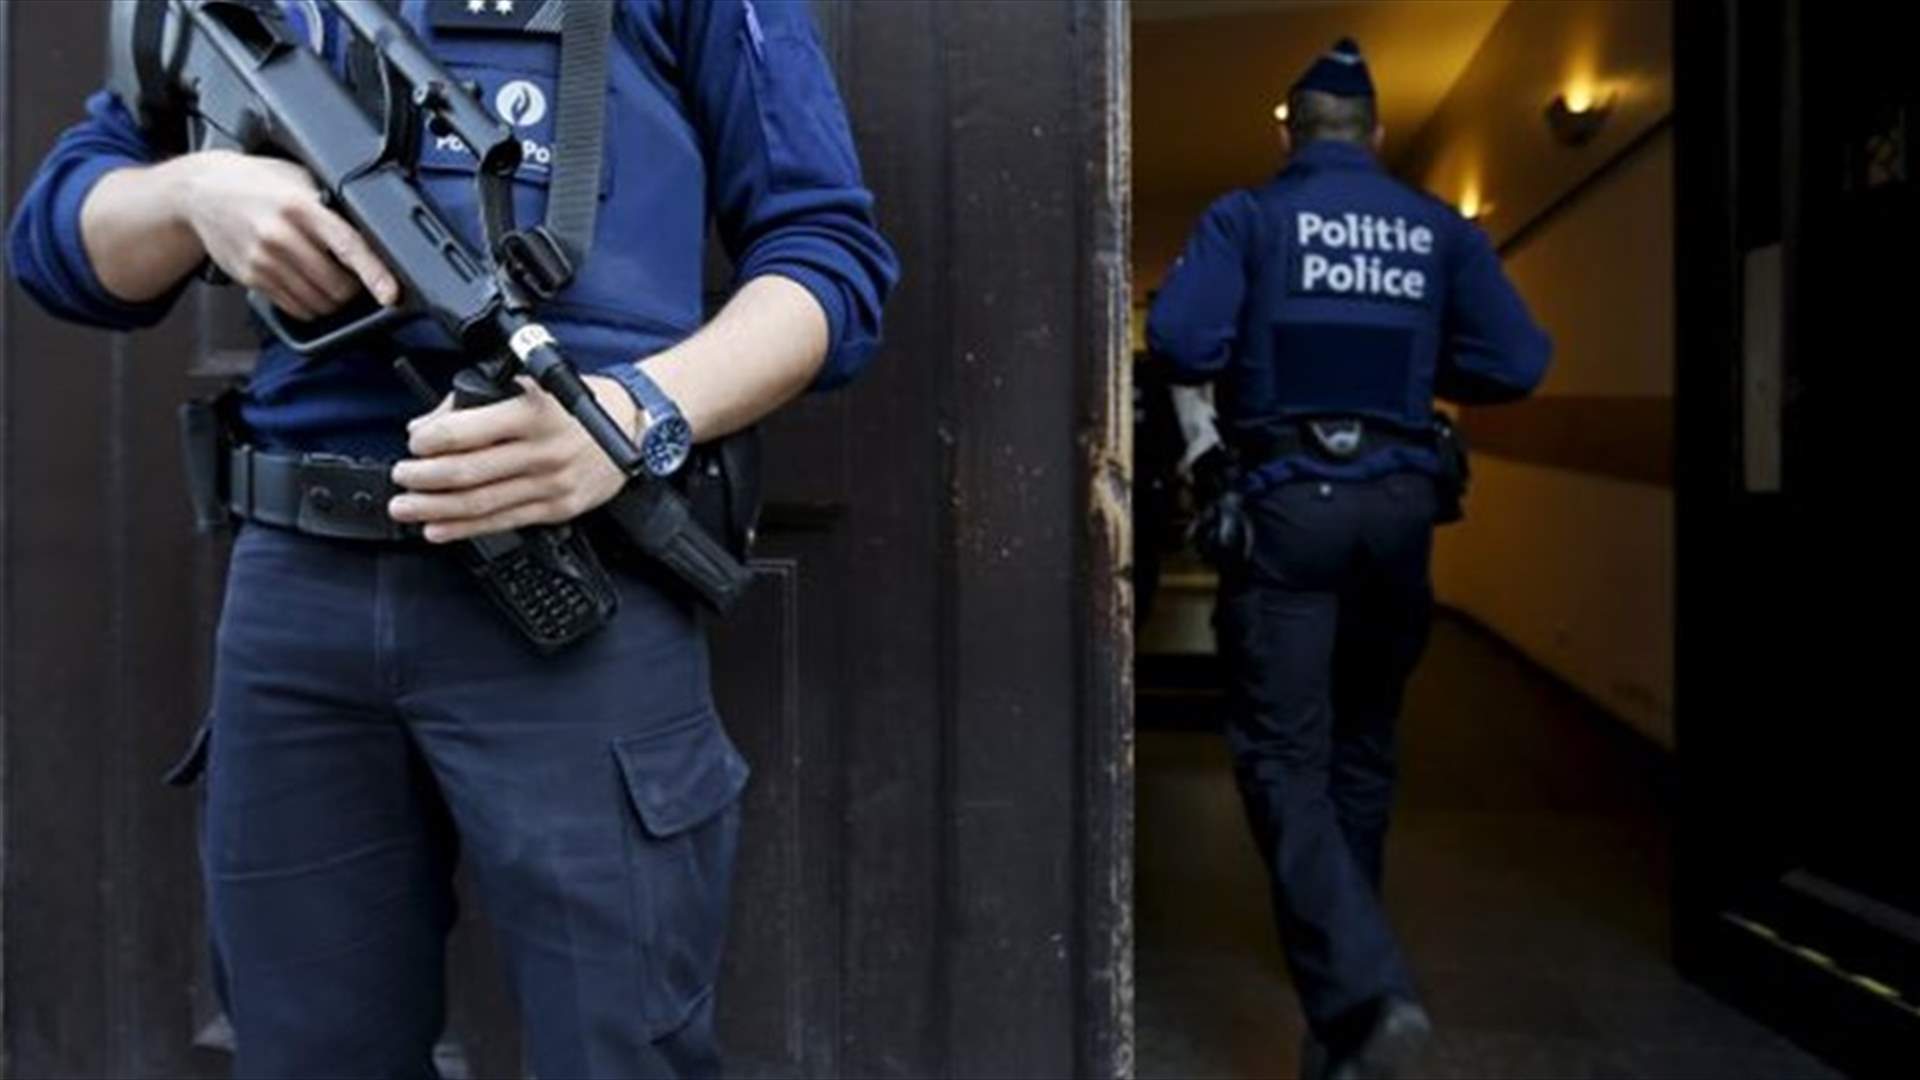 بلجيكا توجه الاتهام الى امرأة يشتبه بأنها أعدت لهجوم في اوروبا